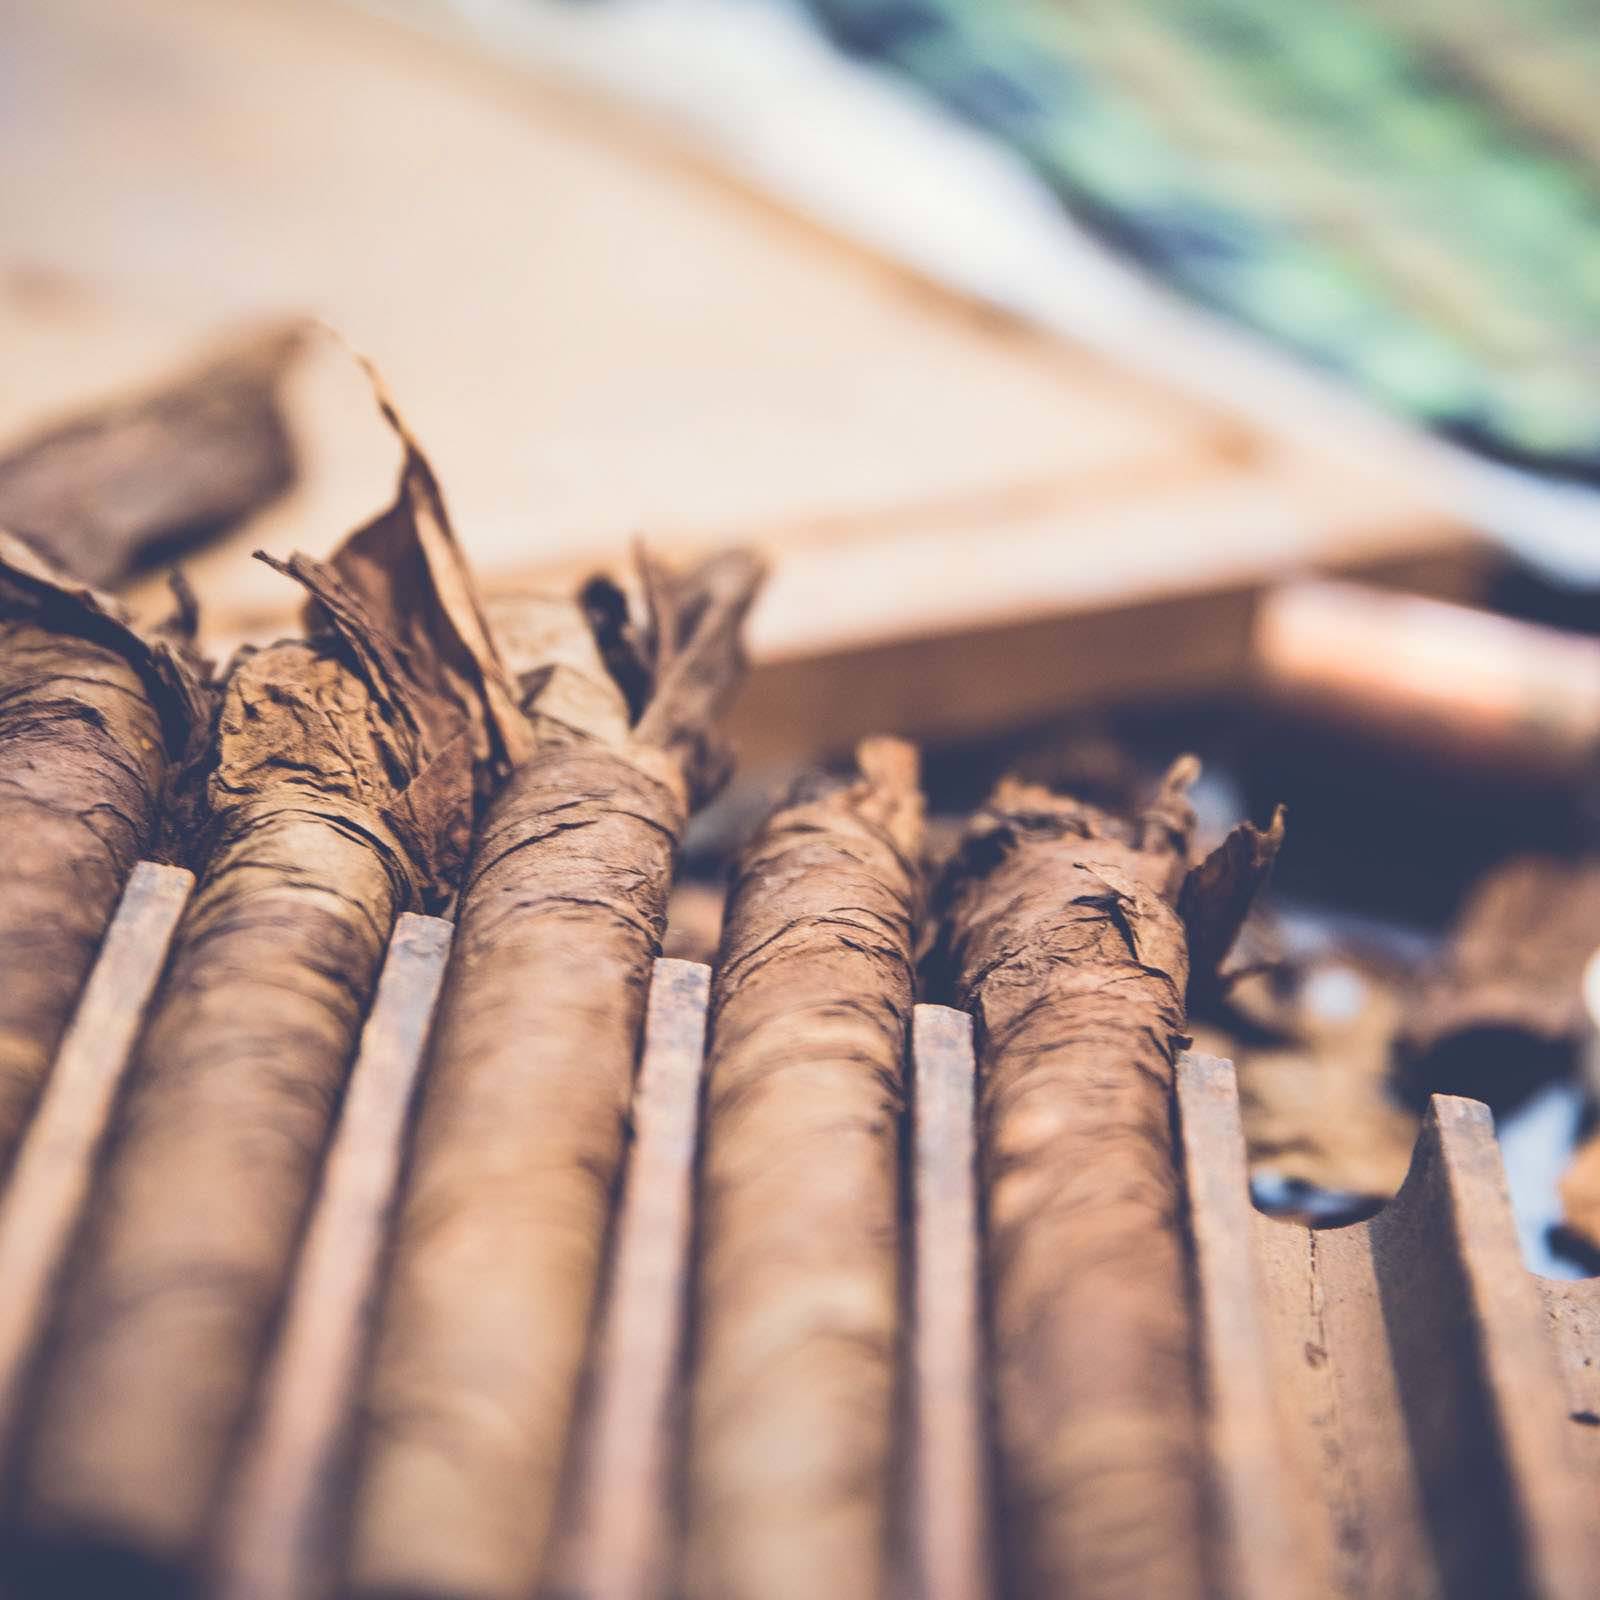 Zigarrendreher | Hamburg | Zigarren | Drehen | Zigarrenroller | Zigarrenrollerin | Zigarrendreherin | Mieten | Anfragen | Trocadero | Handgemacht | Zigarren | Shop | Geschenk | kaufen | Robusto | Corona | Torpedo | Banderole | Tabak